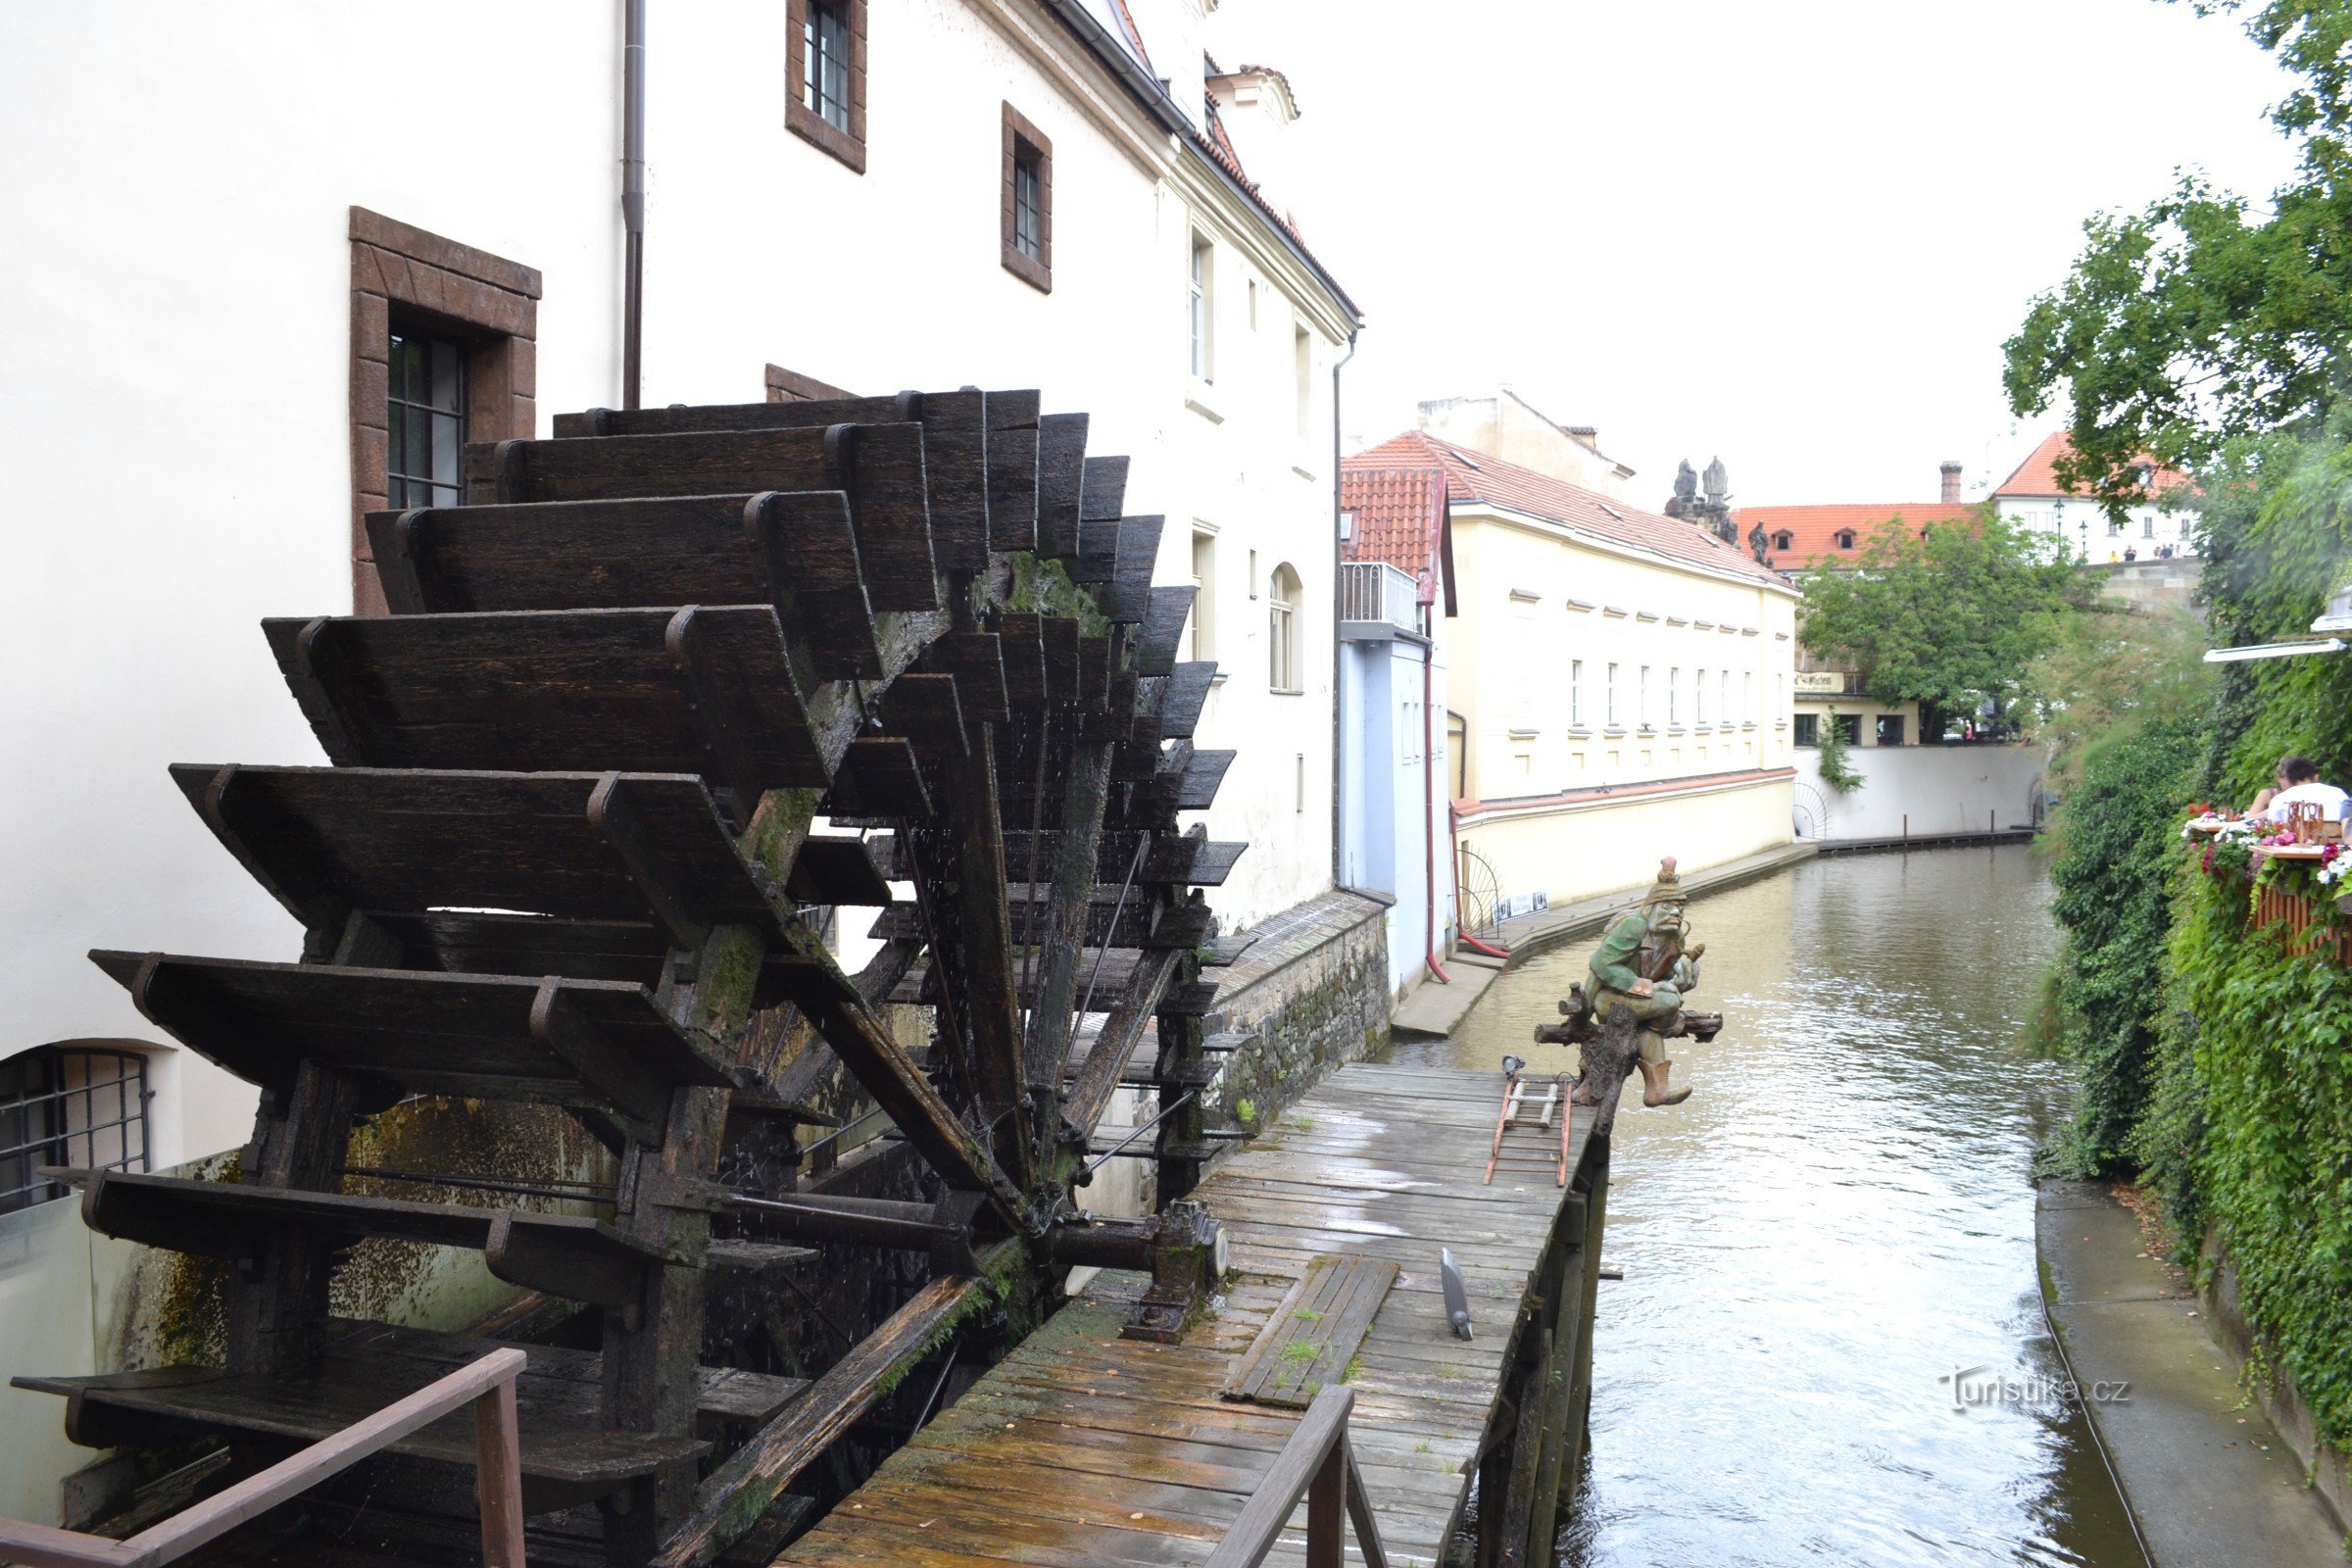 het wiel van de Velkopřerovský molen met een waterpomp